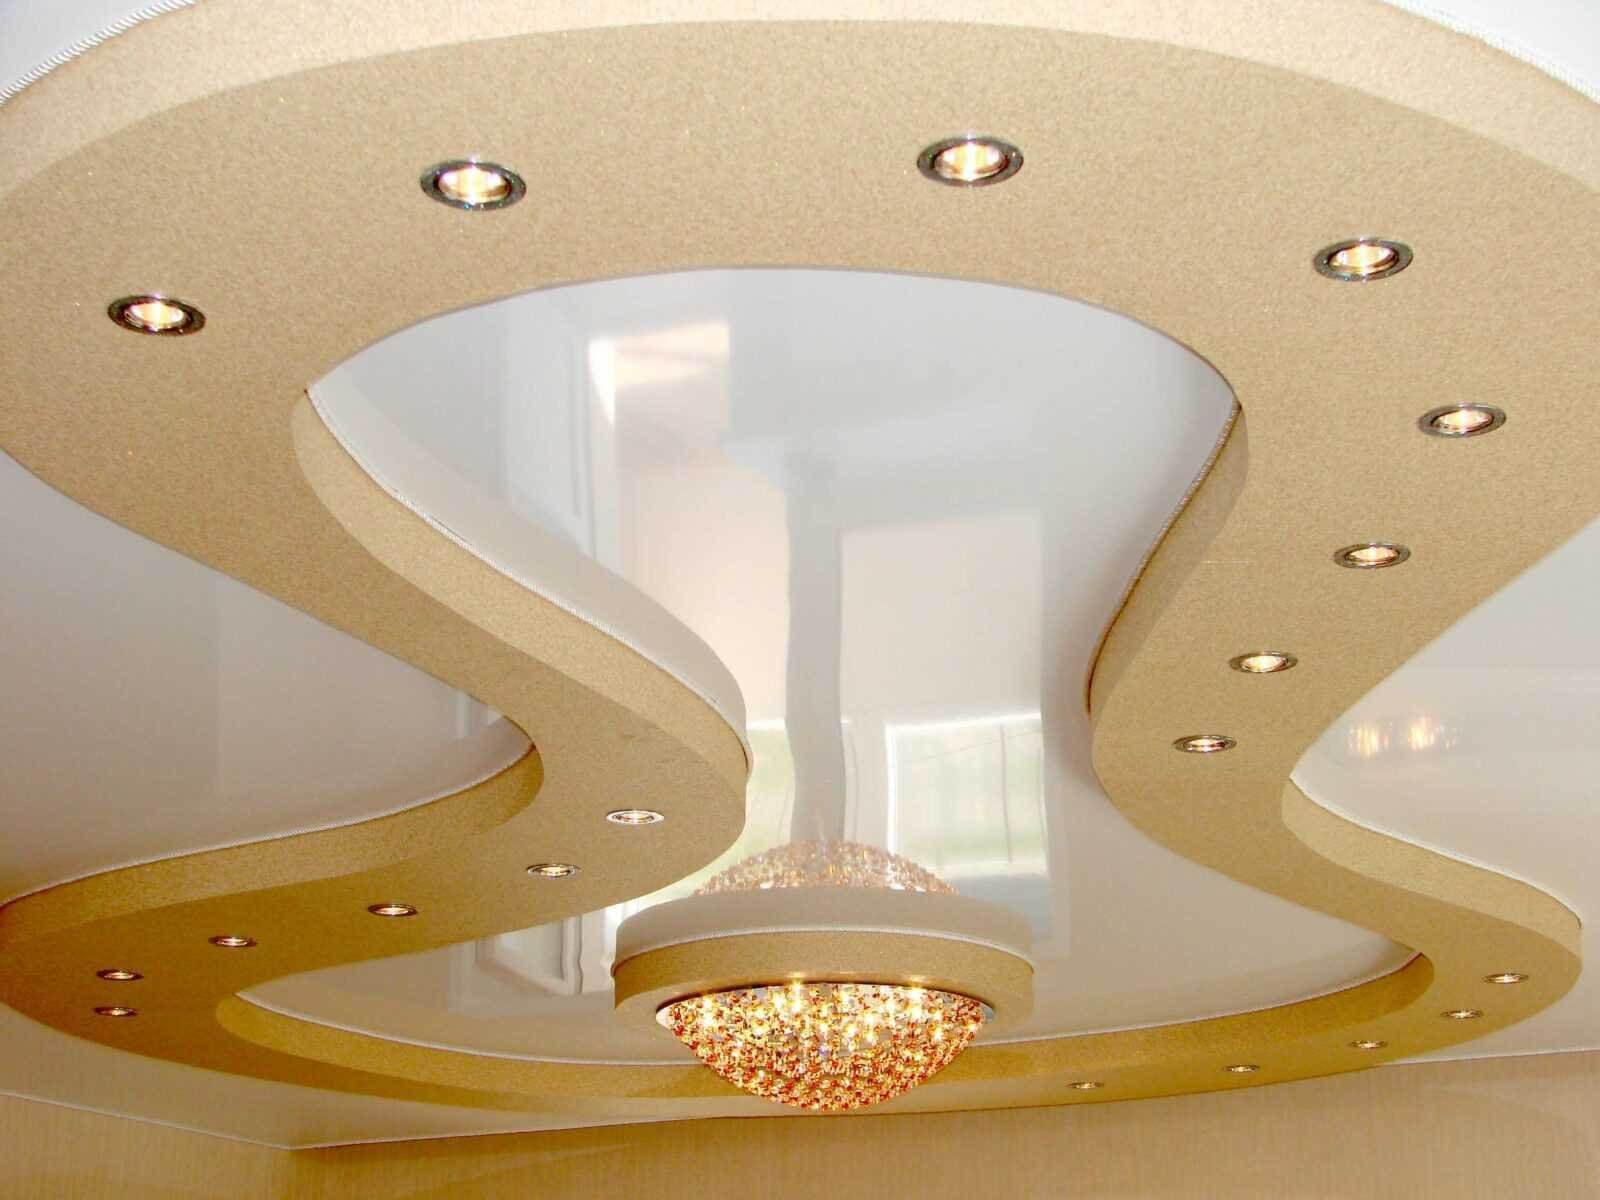 Дизайн потолков — фото красивых современных подвесных и натяжных потолков